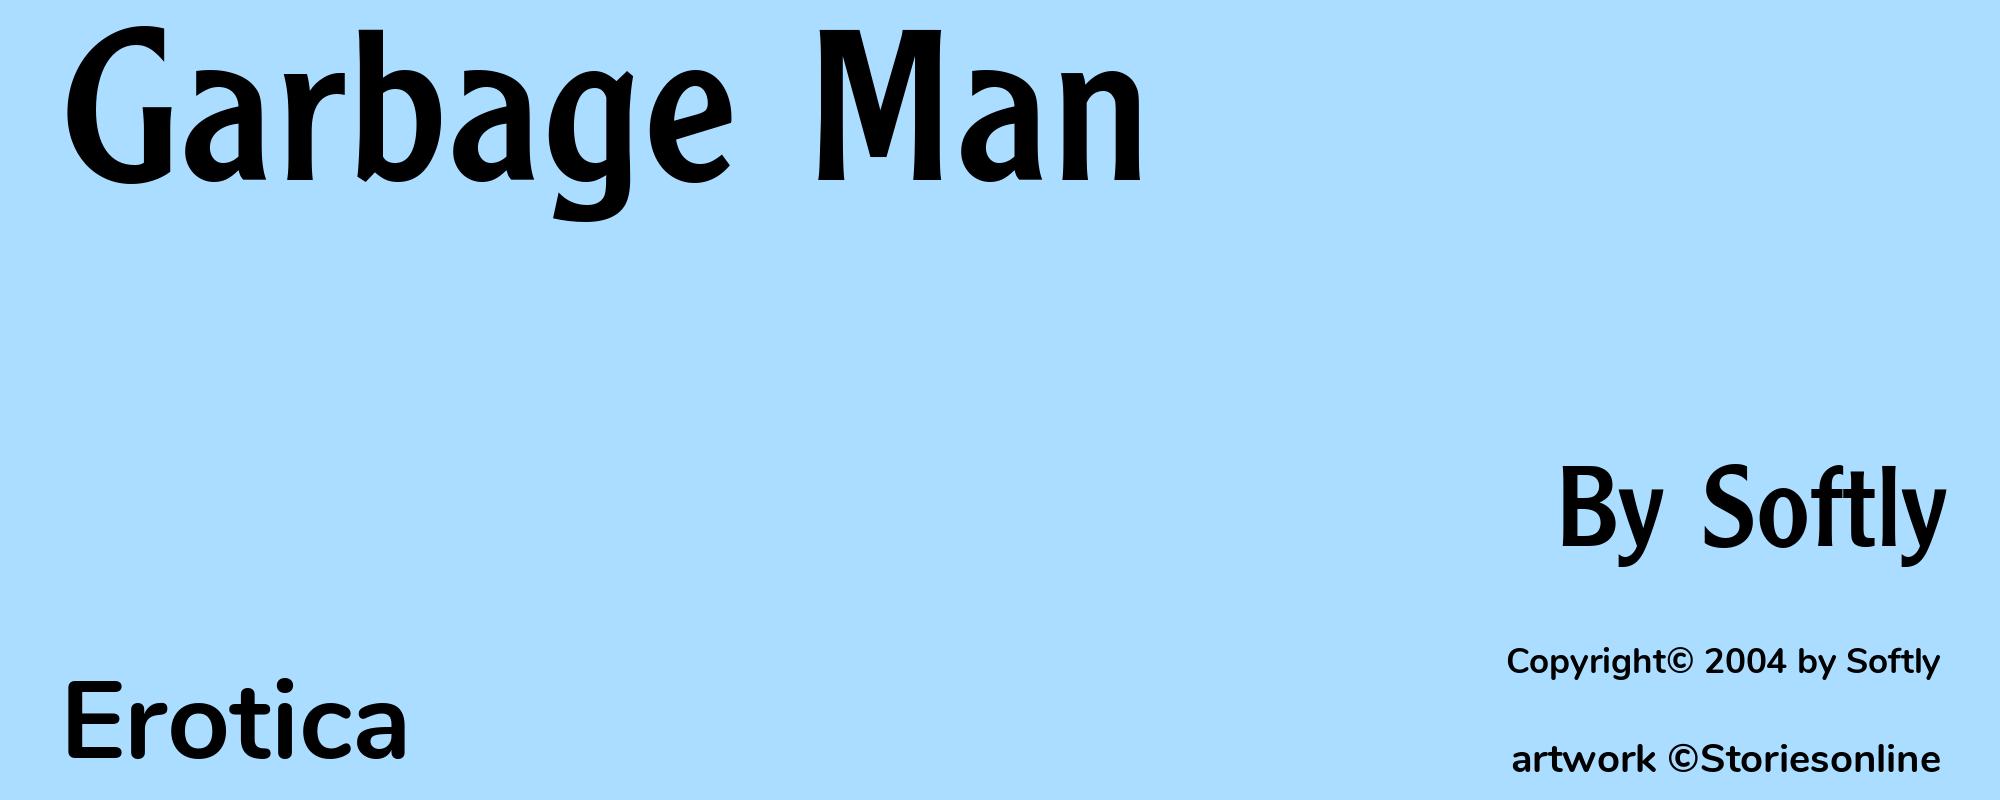 Garbage Man - Cover